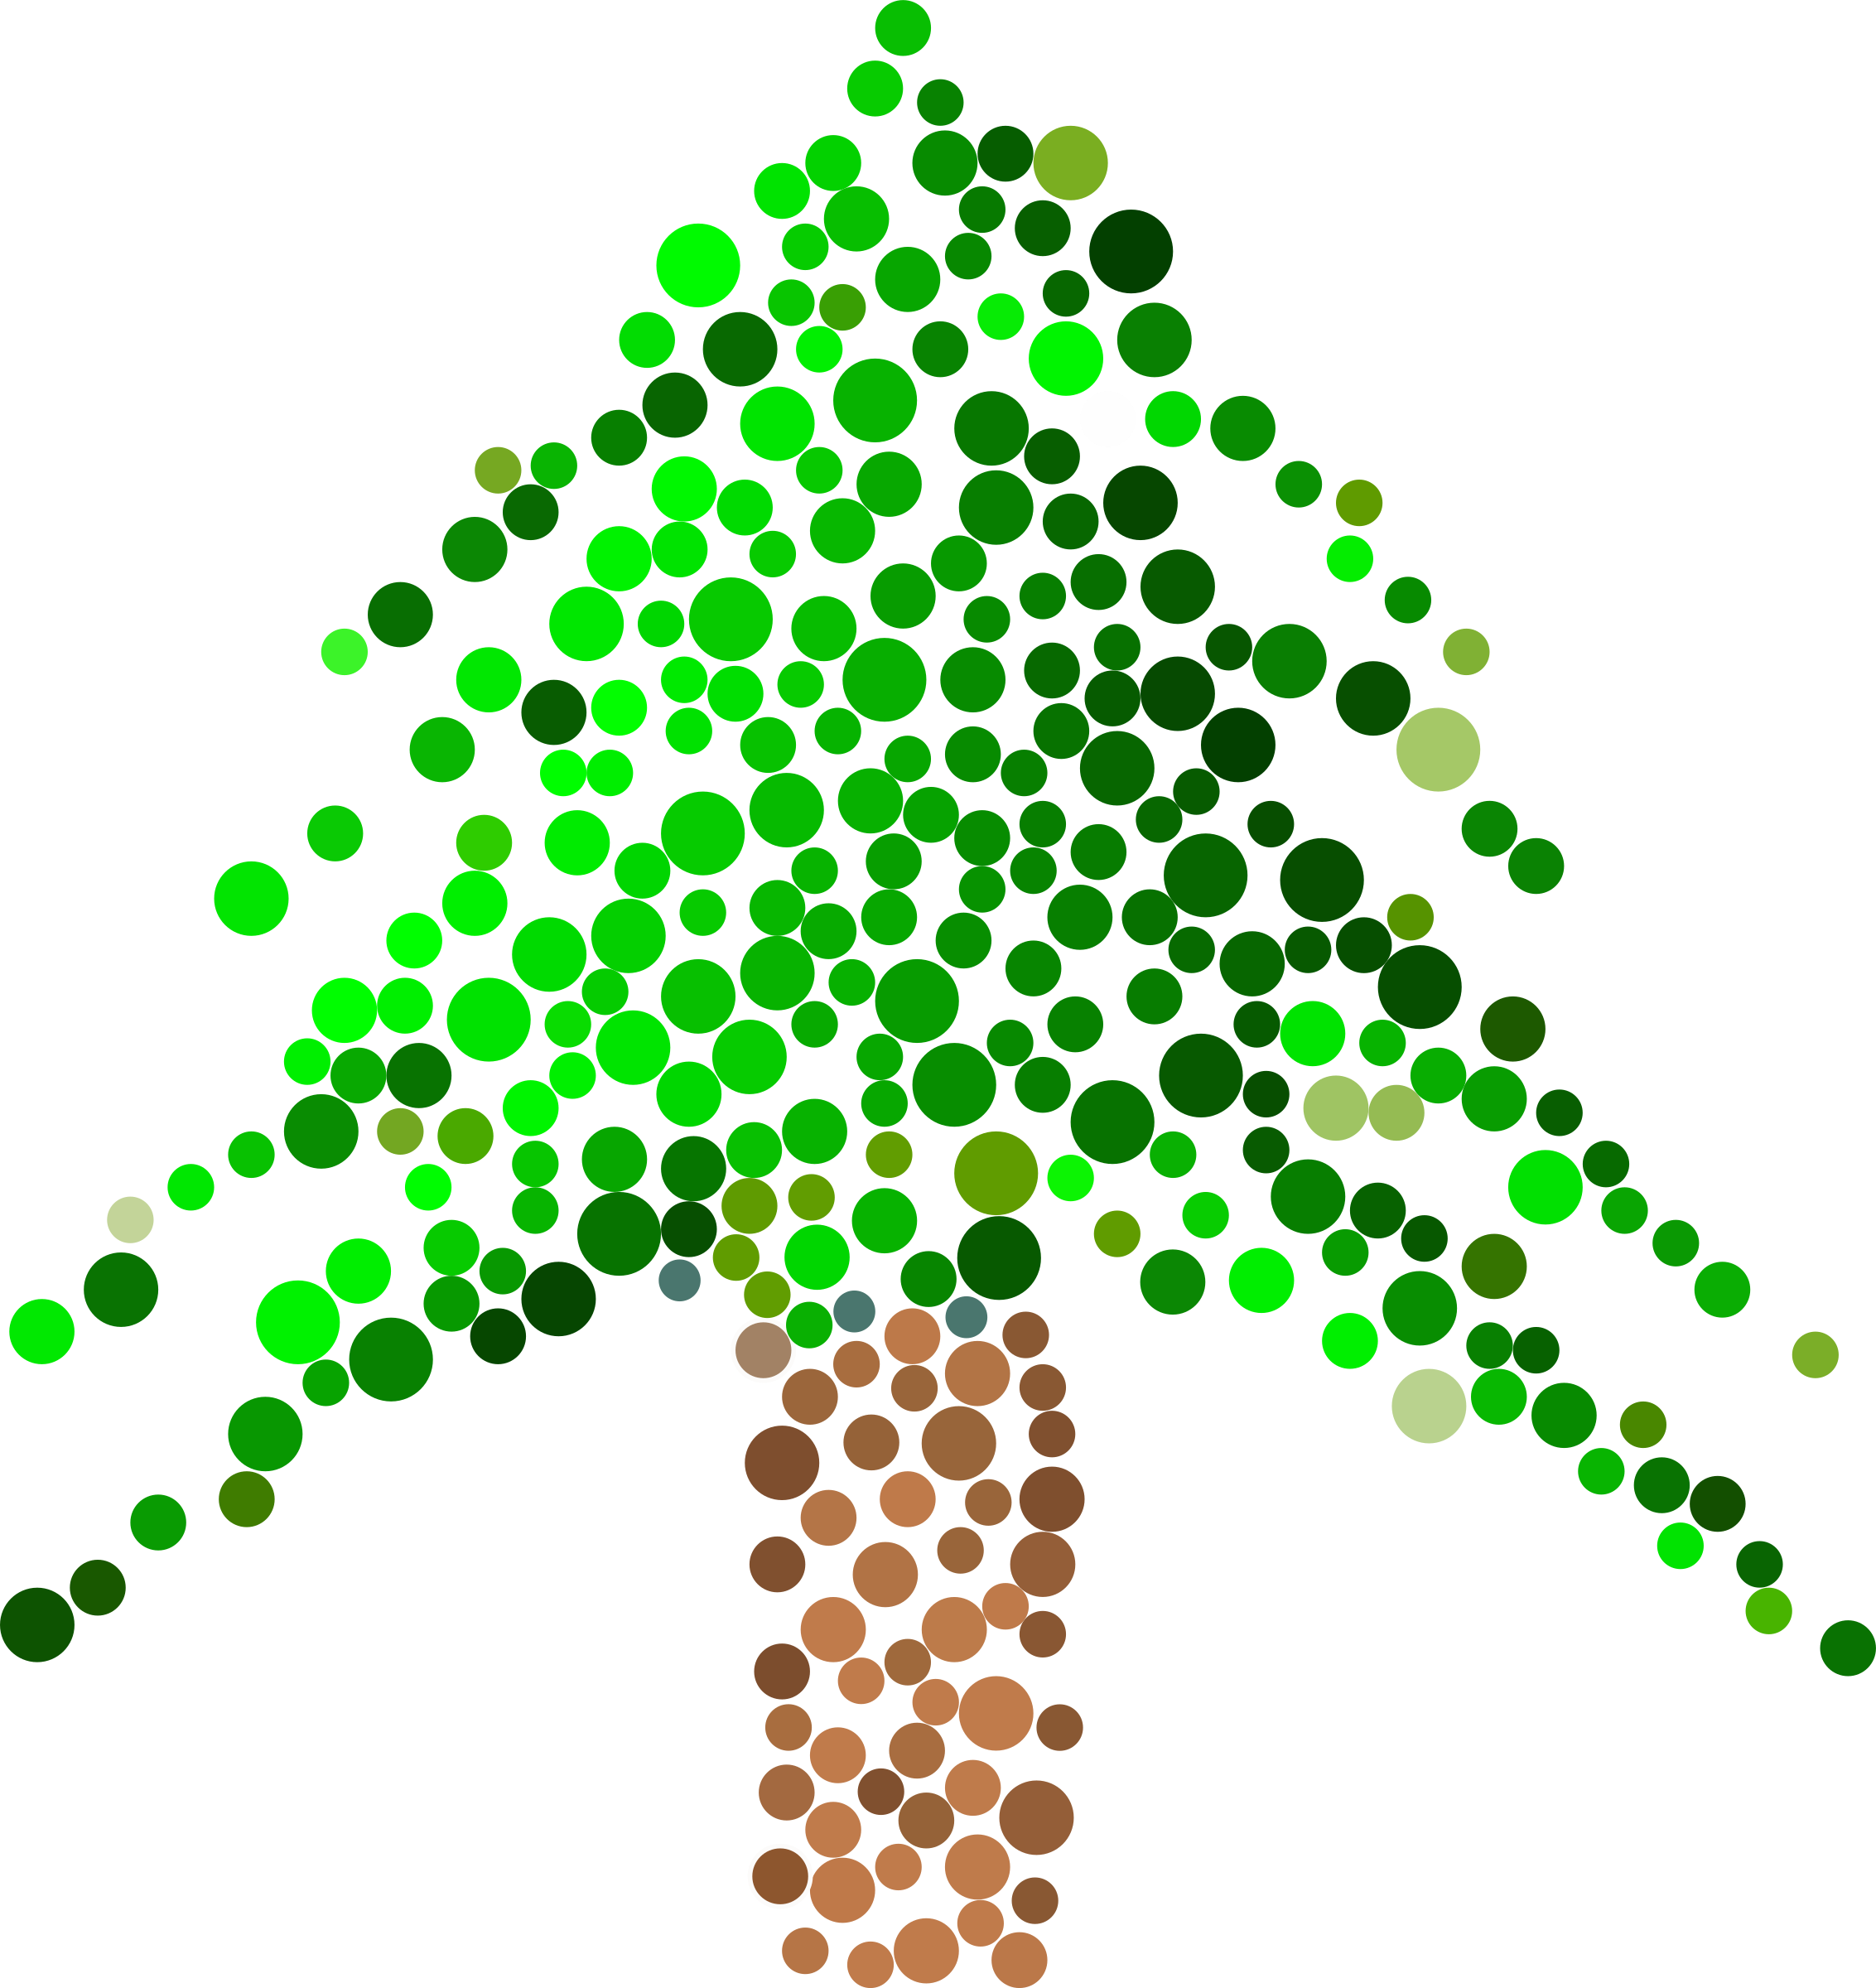 A Tree With Many Circles